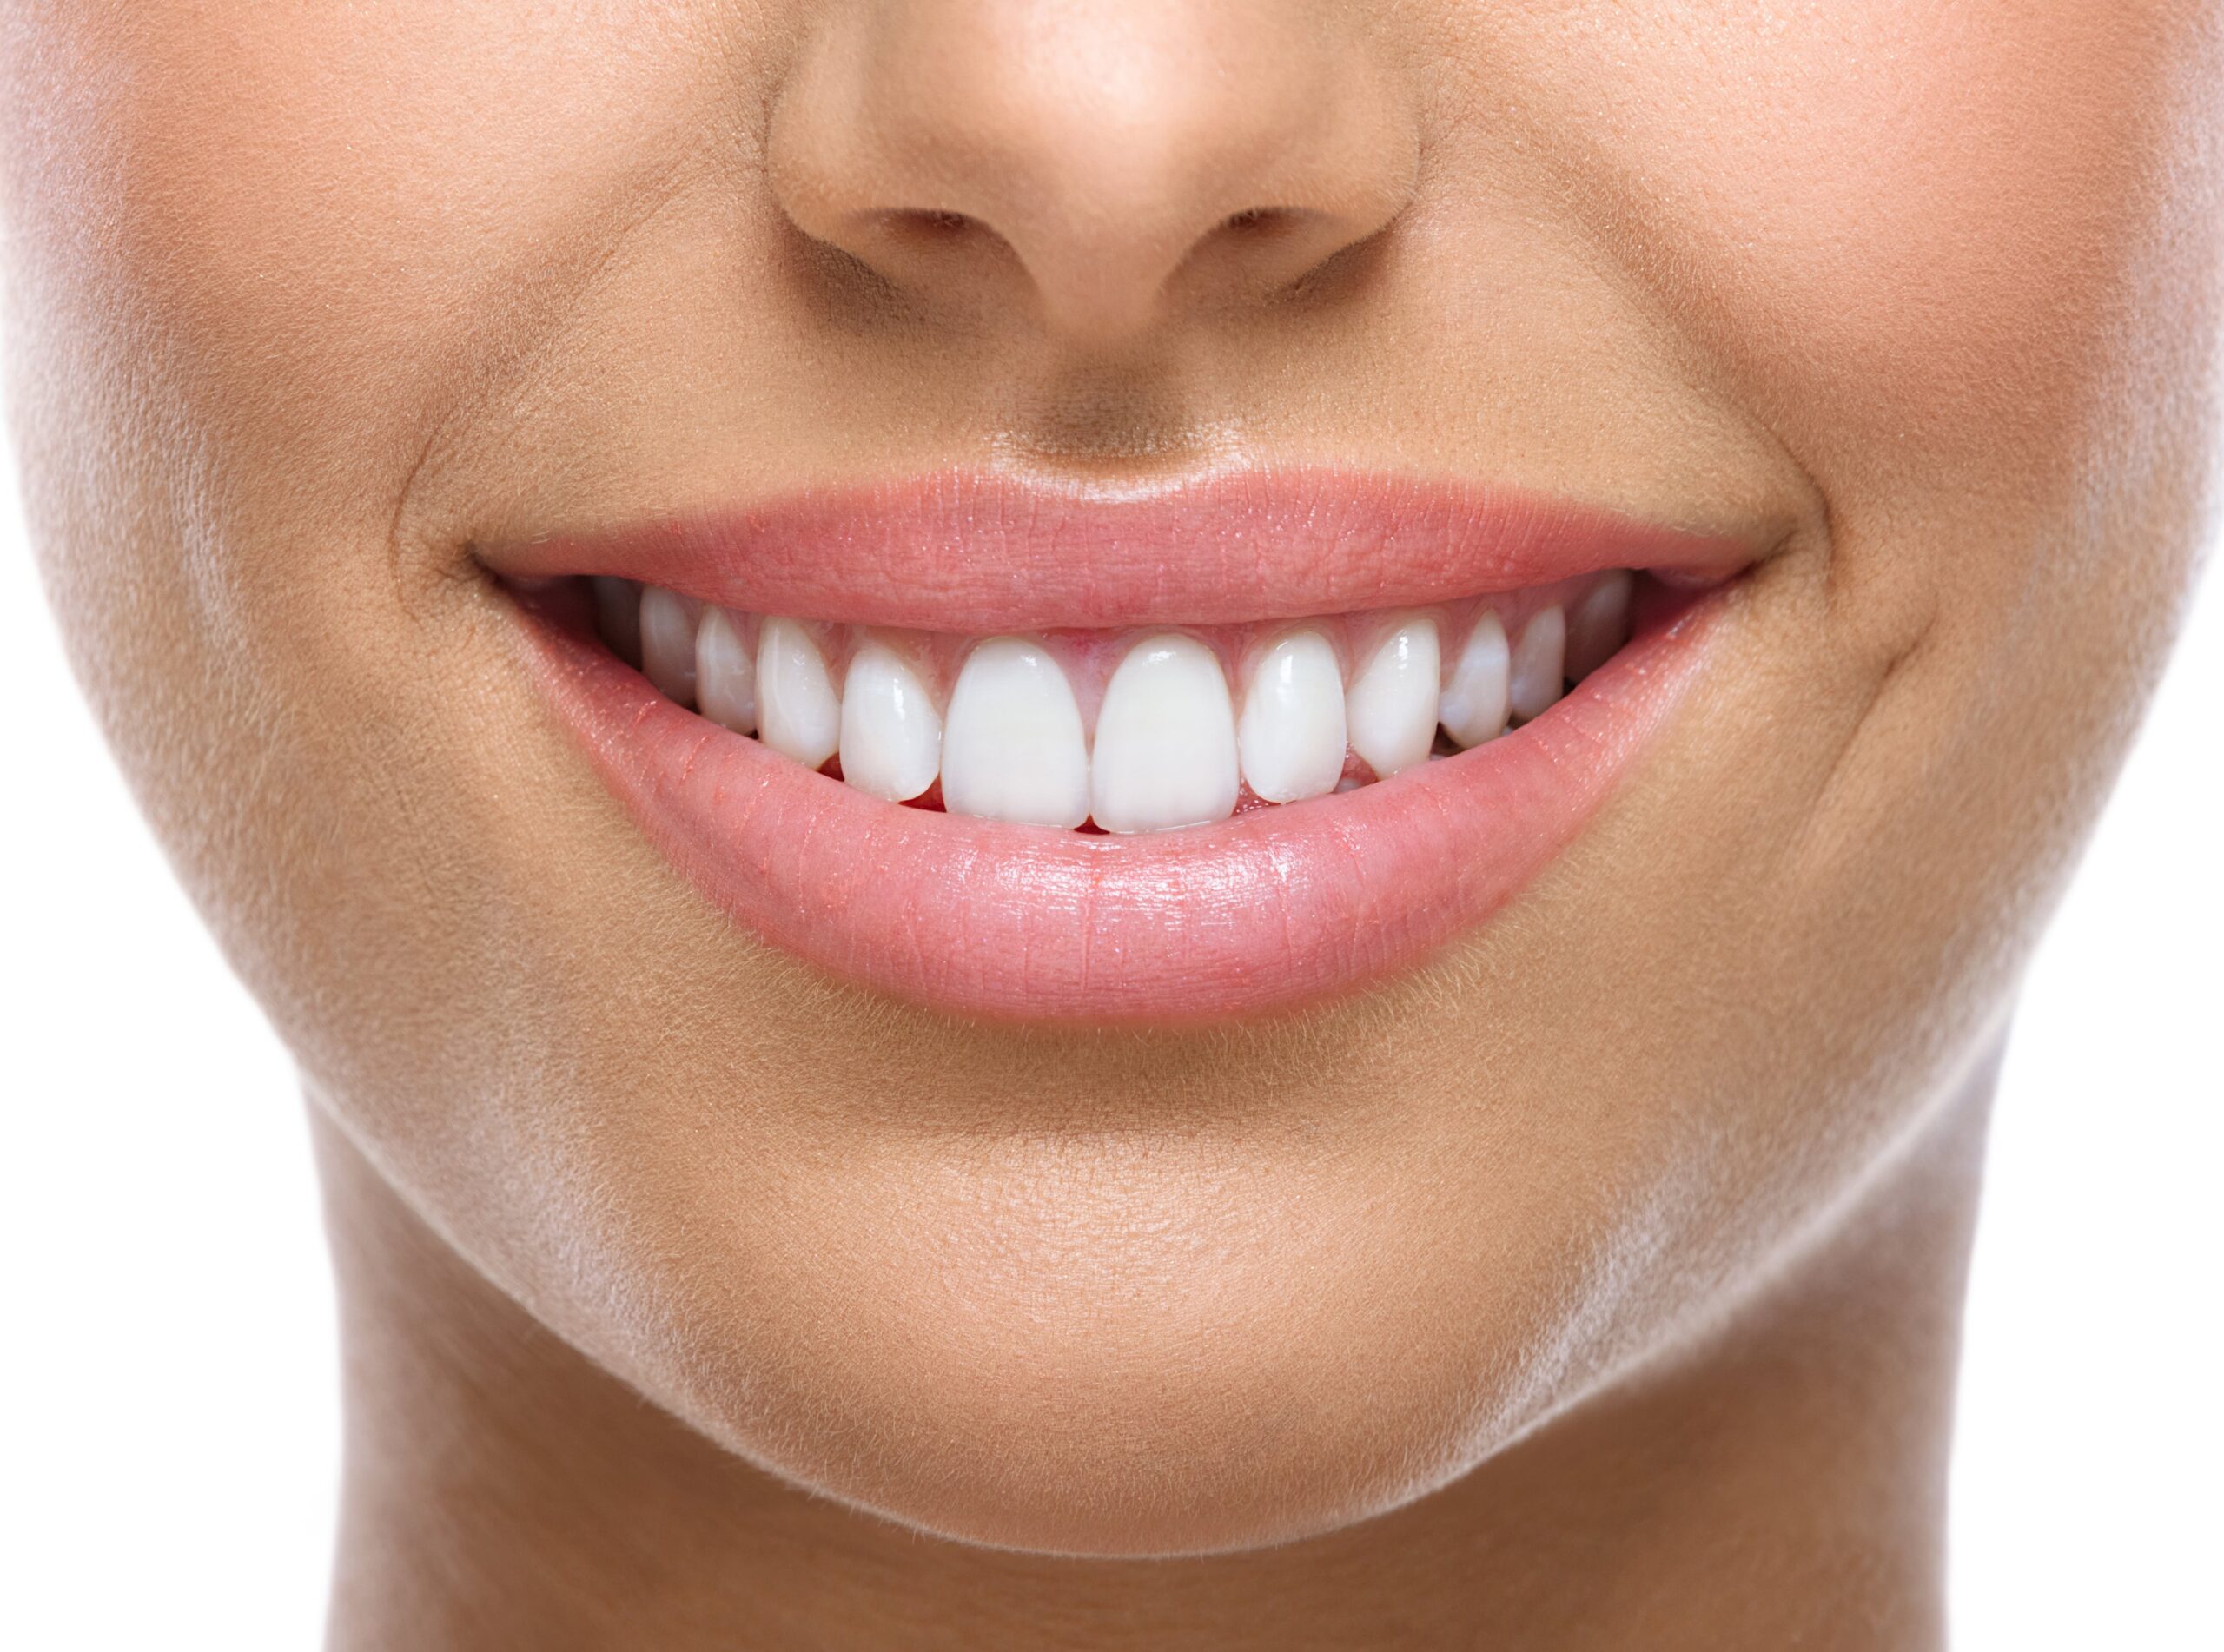 Belles dents blanches d'une jeune femme après un éclaircissement dentaire.